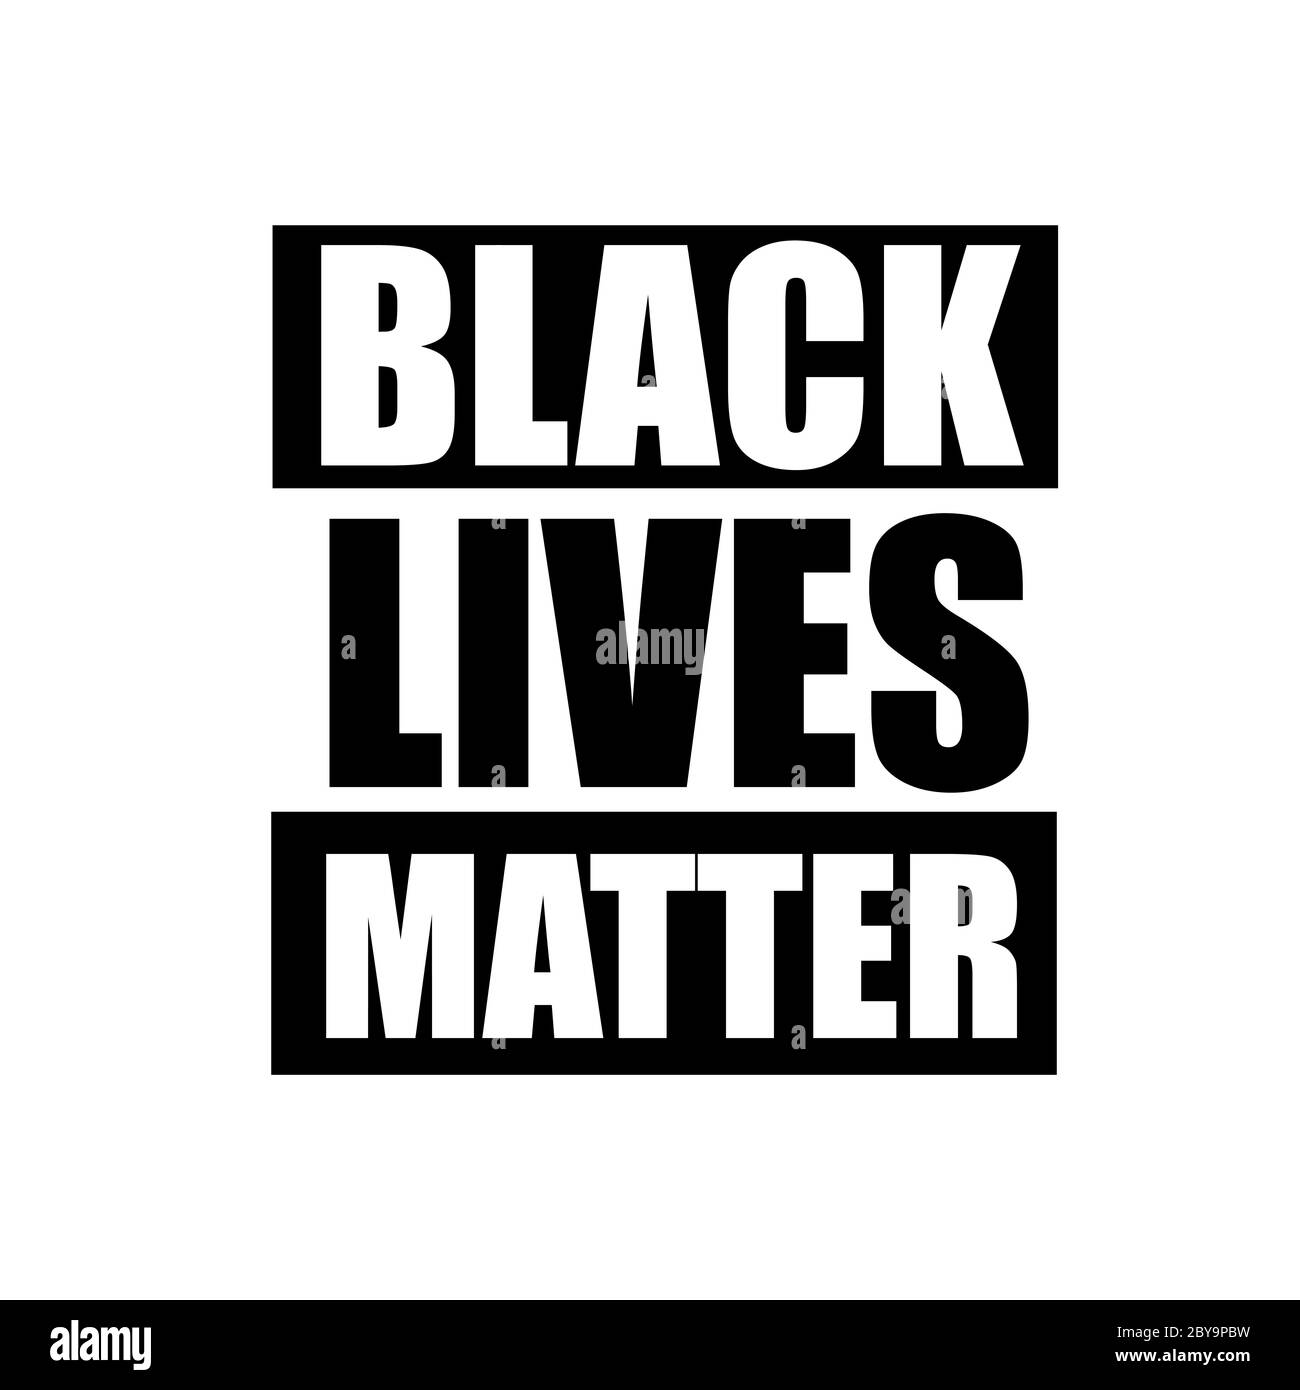 Le vite nere contano, non posso respirare. Banner di protesta sul diritto umano dei neri negli Stati Uniti. Le vite nere contano. America. Foto Stock